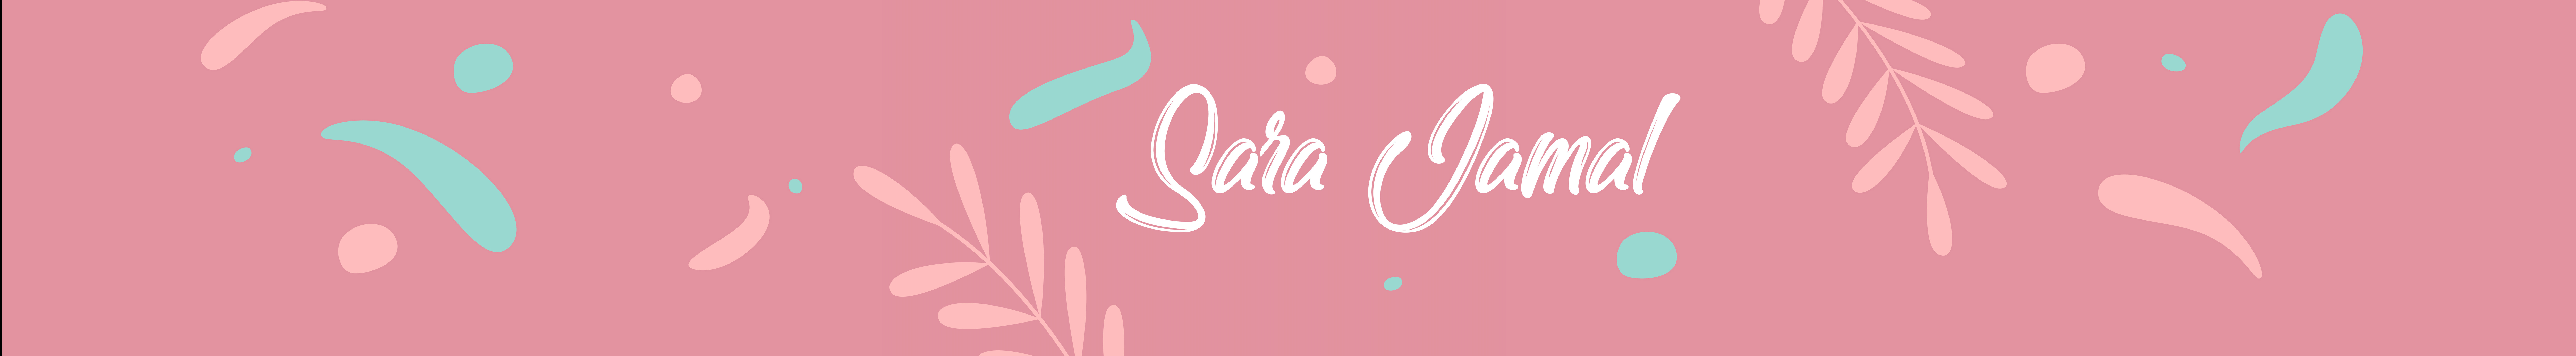 Sara Jamal's profile banner